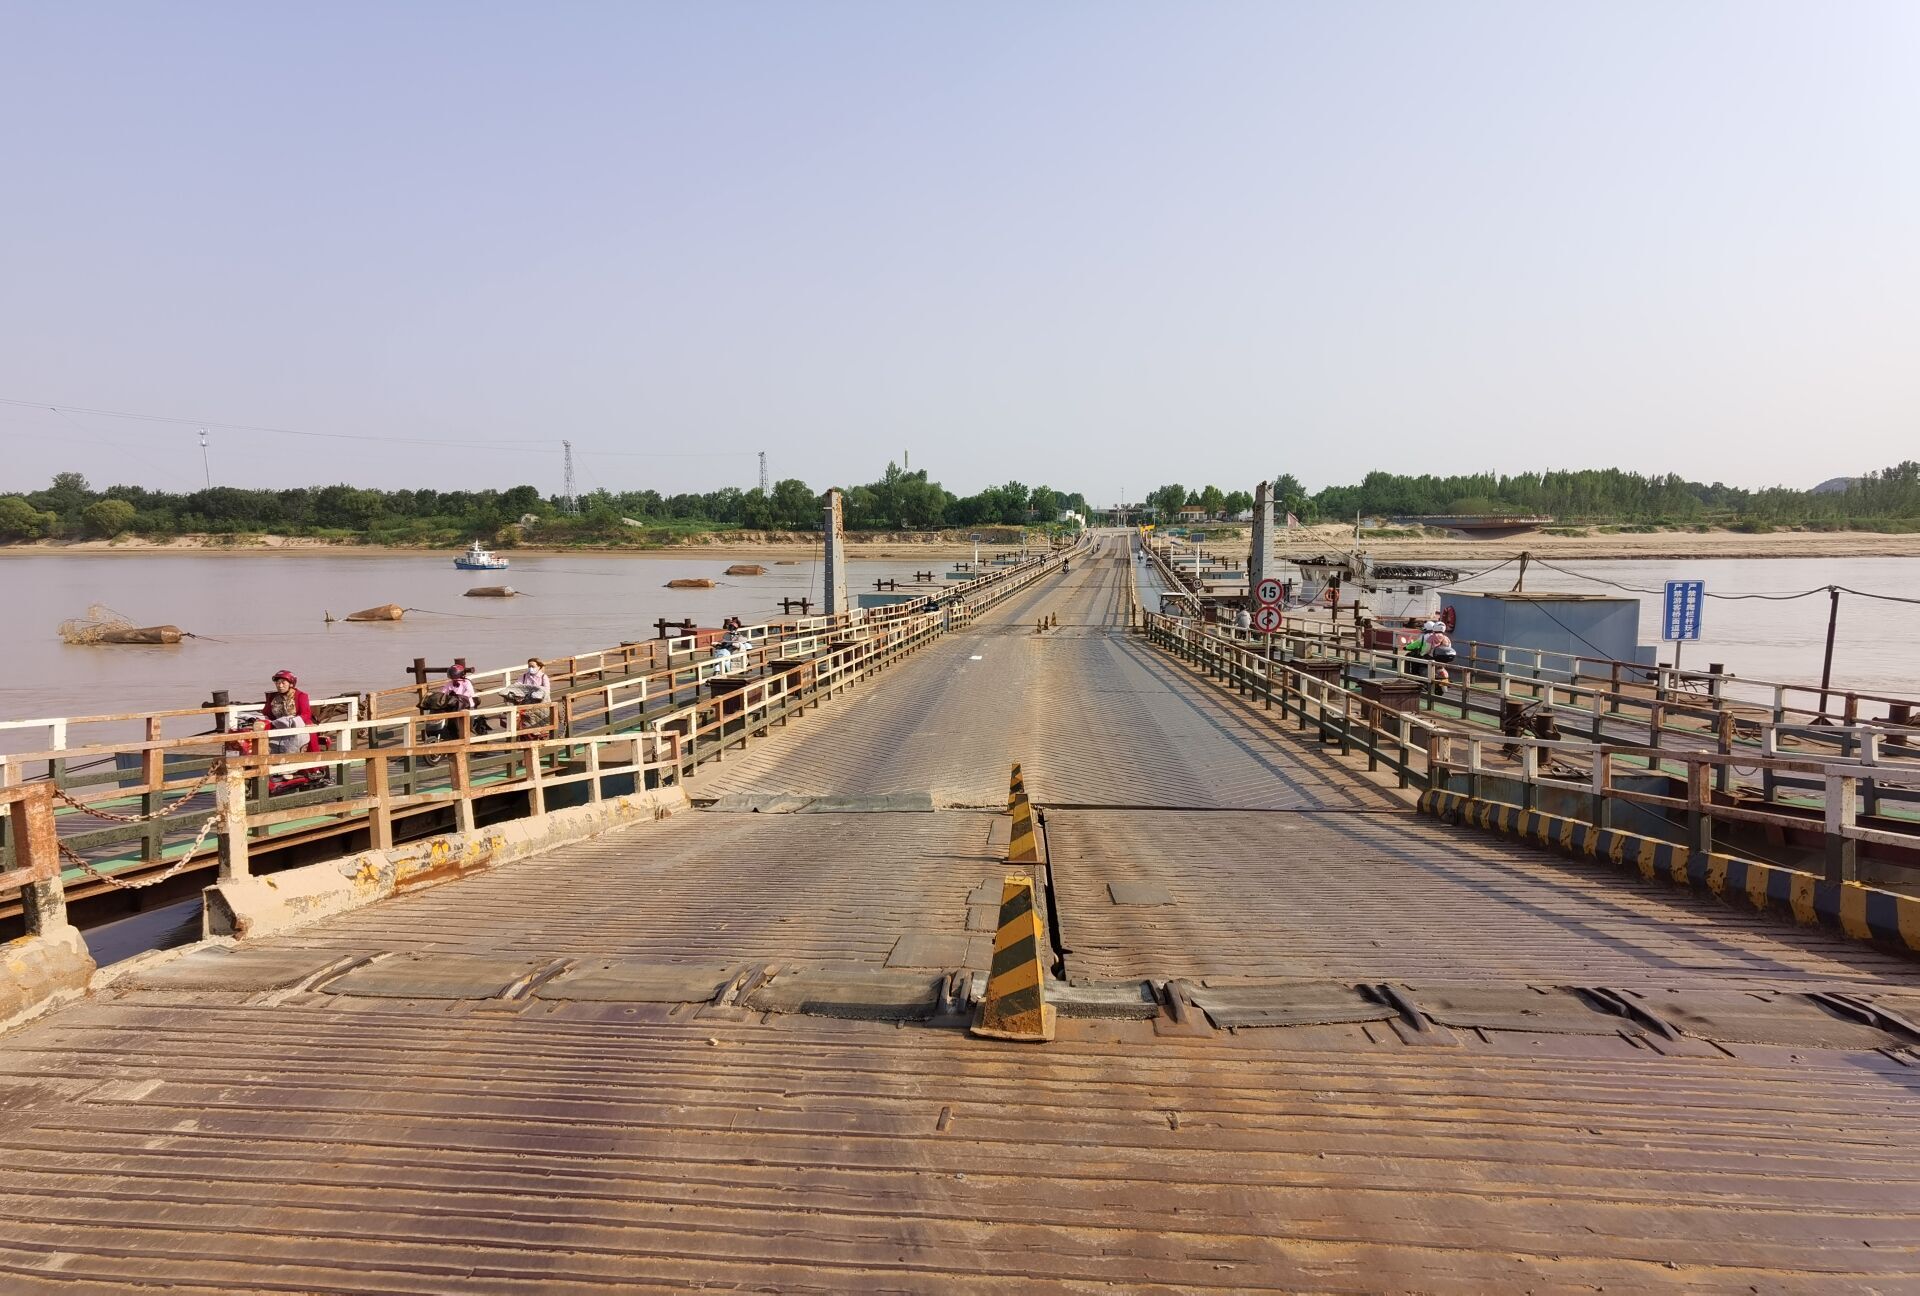 济南黄河浮桥图片图片